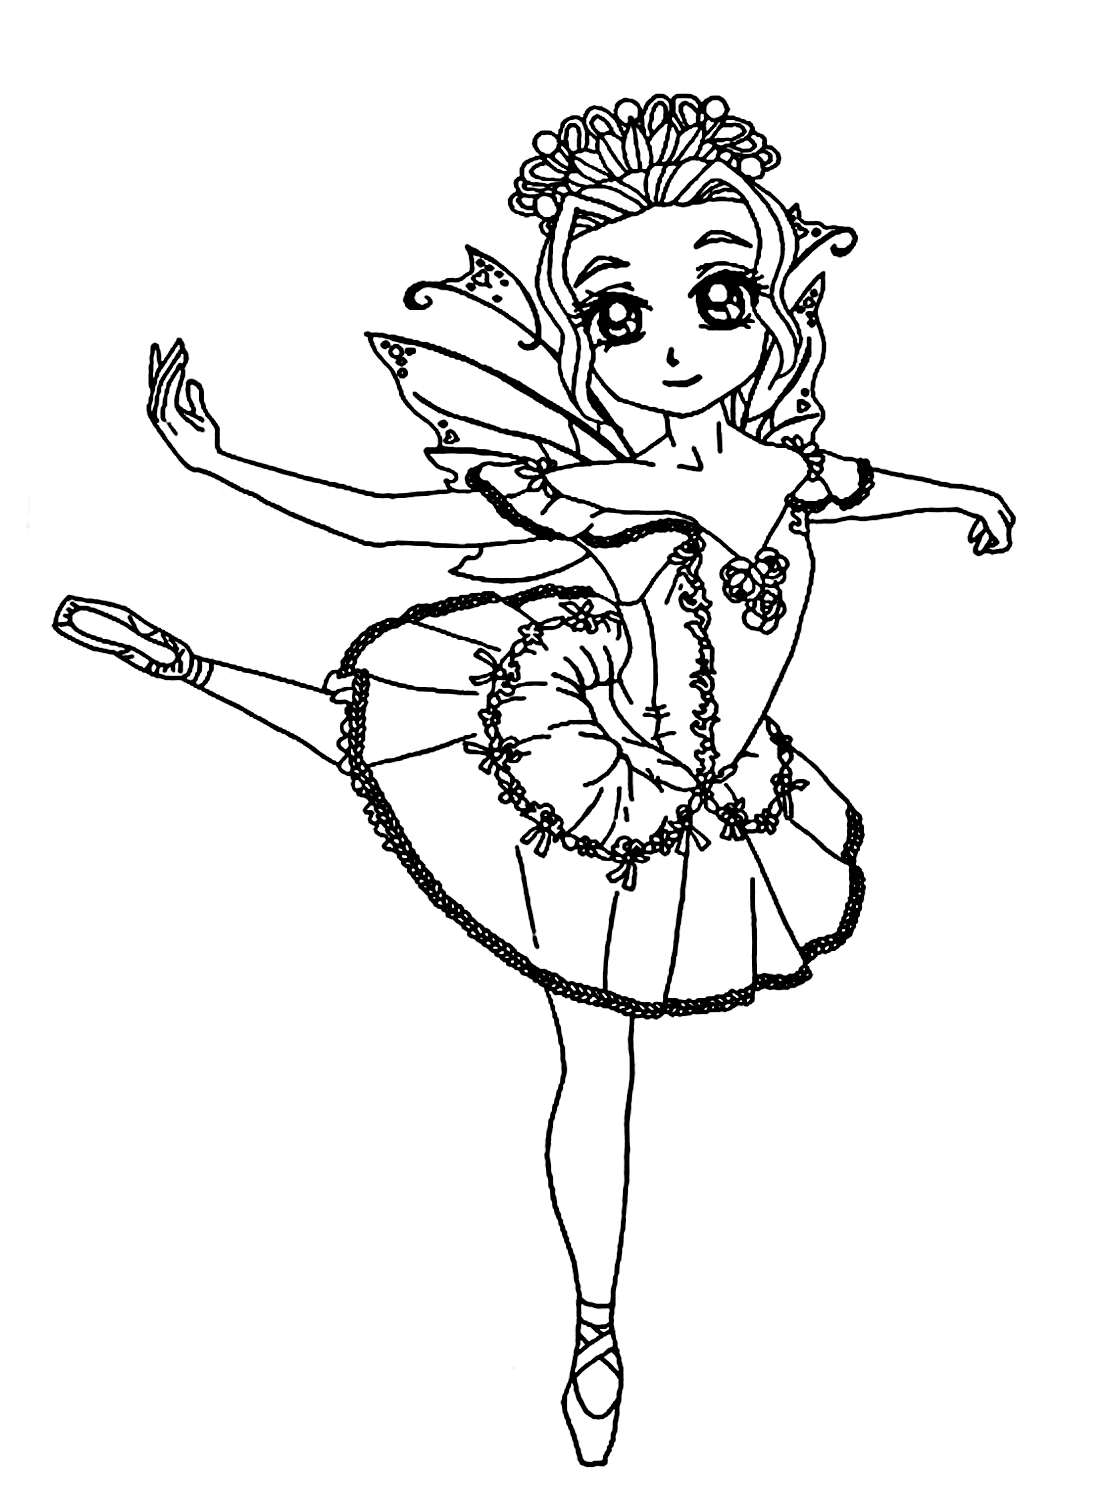 一个小芭蕾舞女孩图片